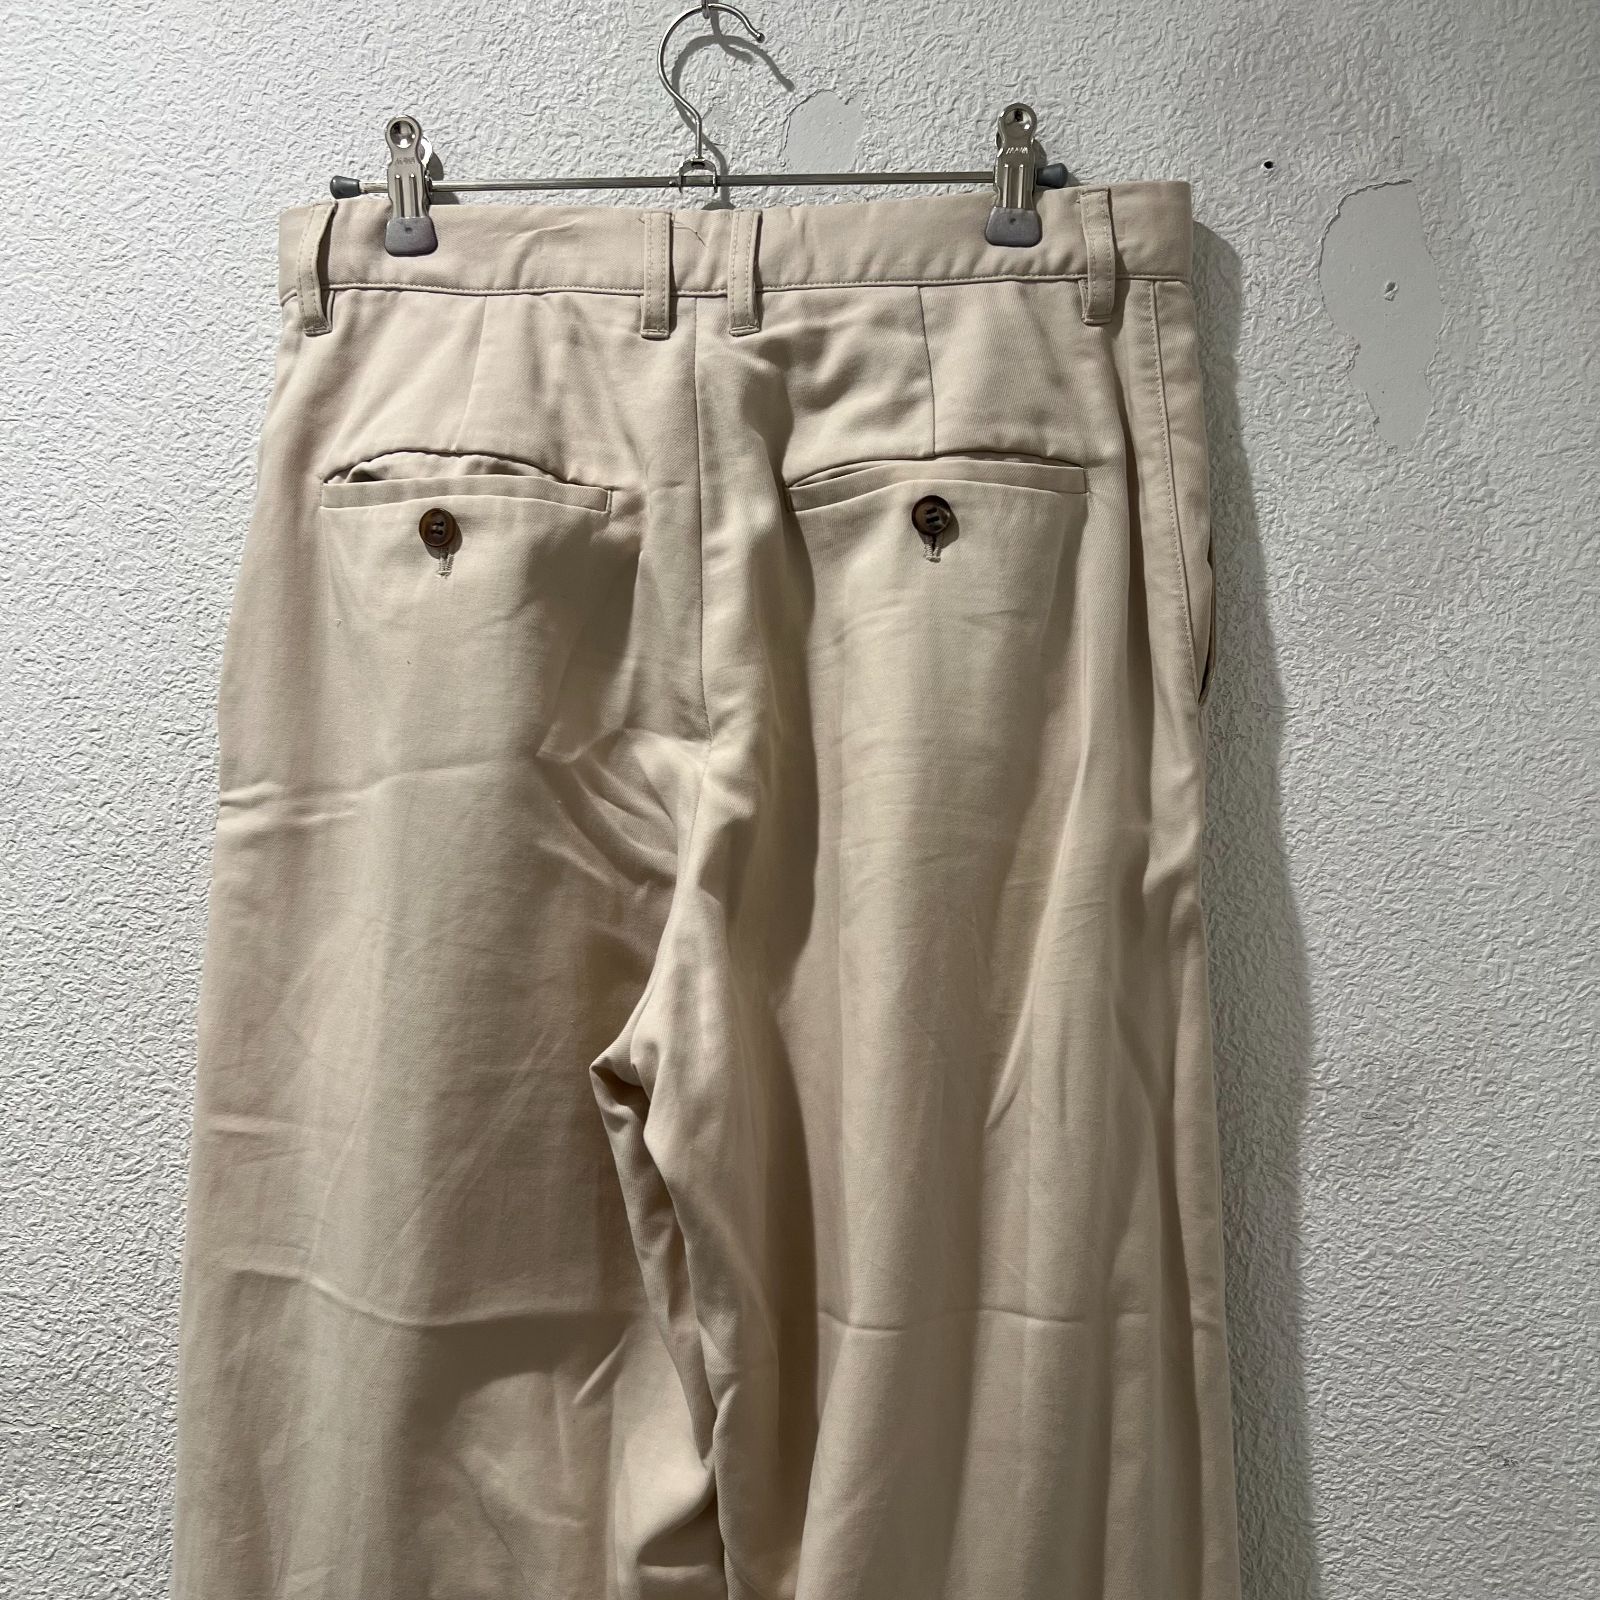 MATSUFUJI マツフジ 21SS Modified Farmers Trousers SIZE 2 【表参道t09】 - メルカリ